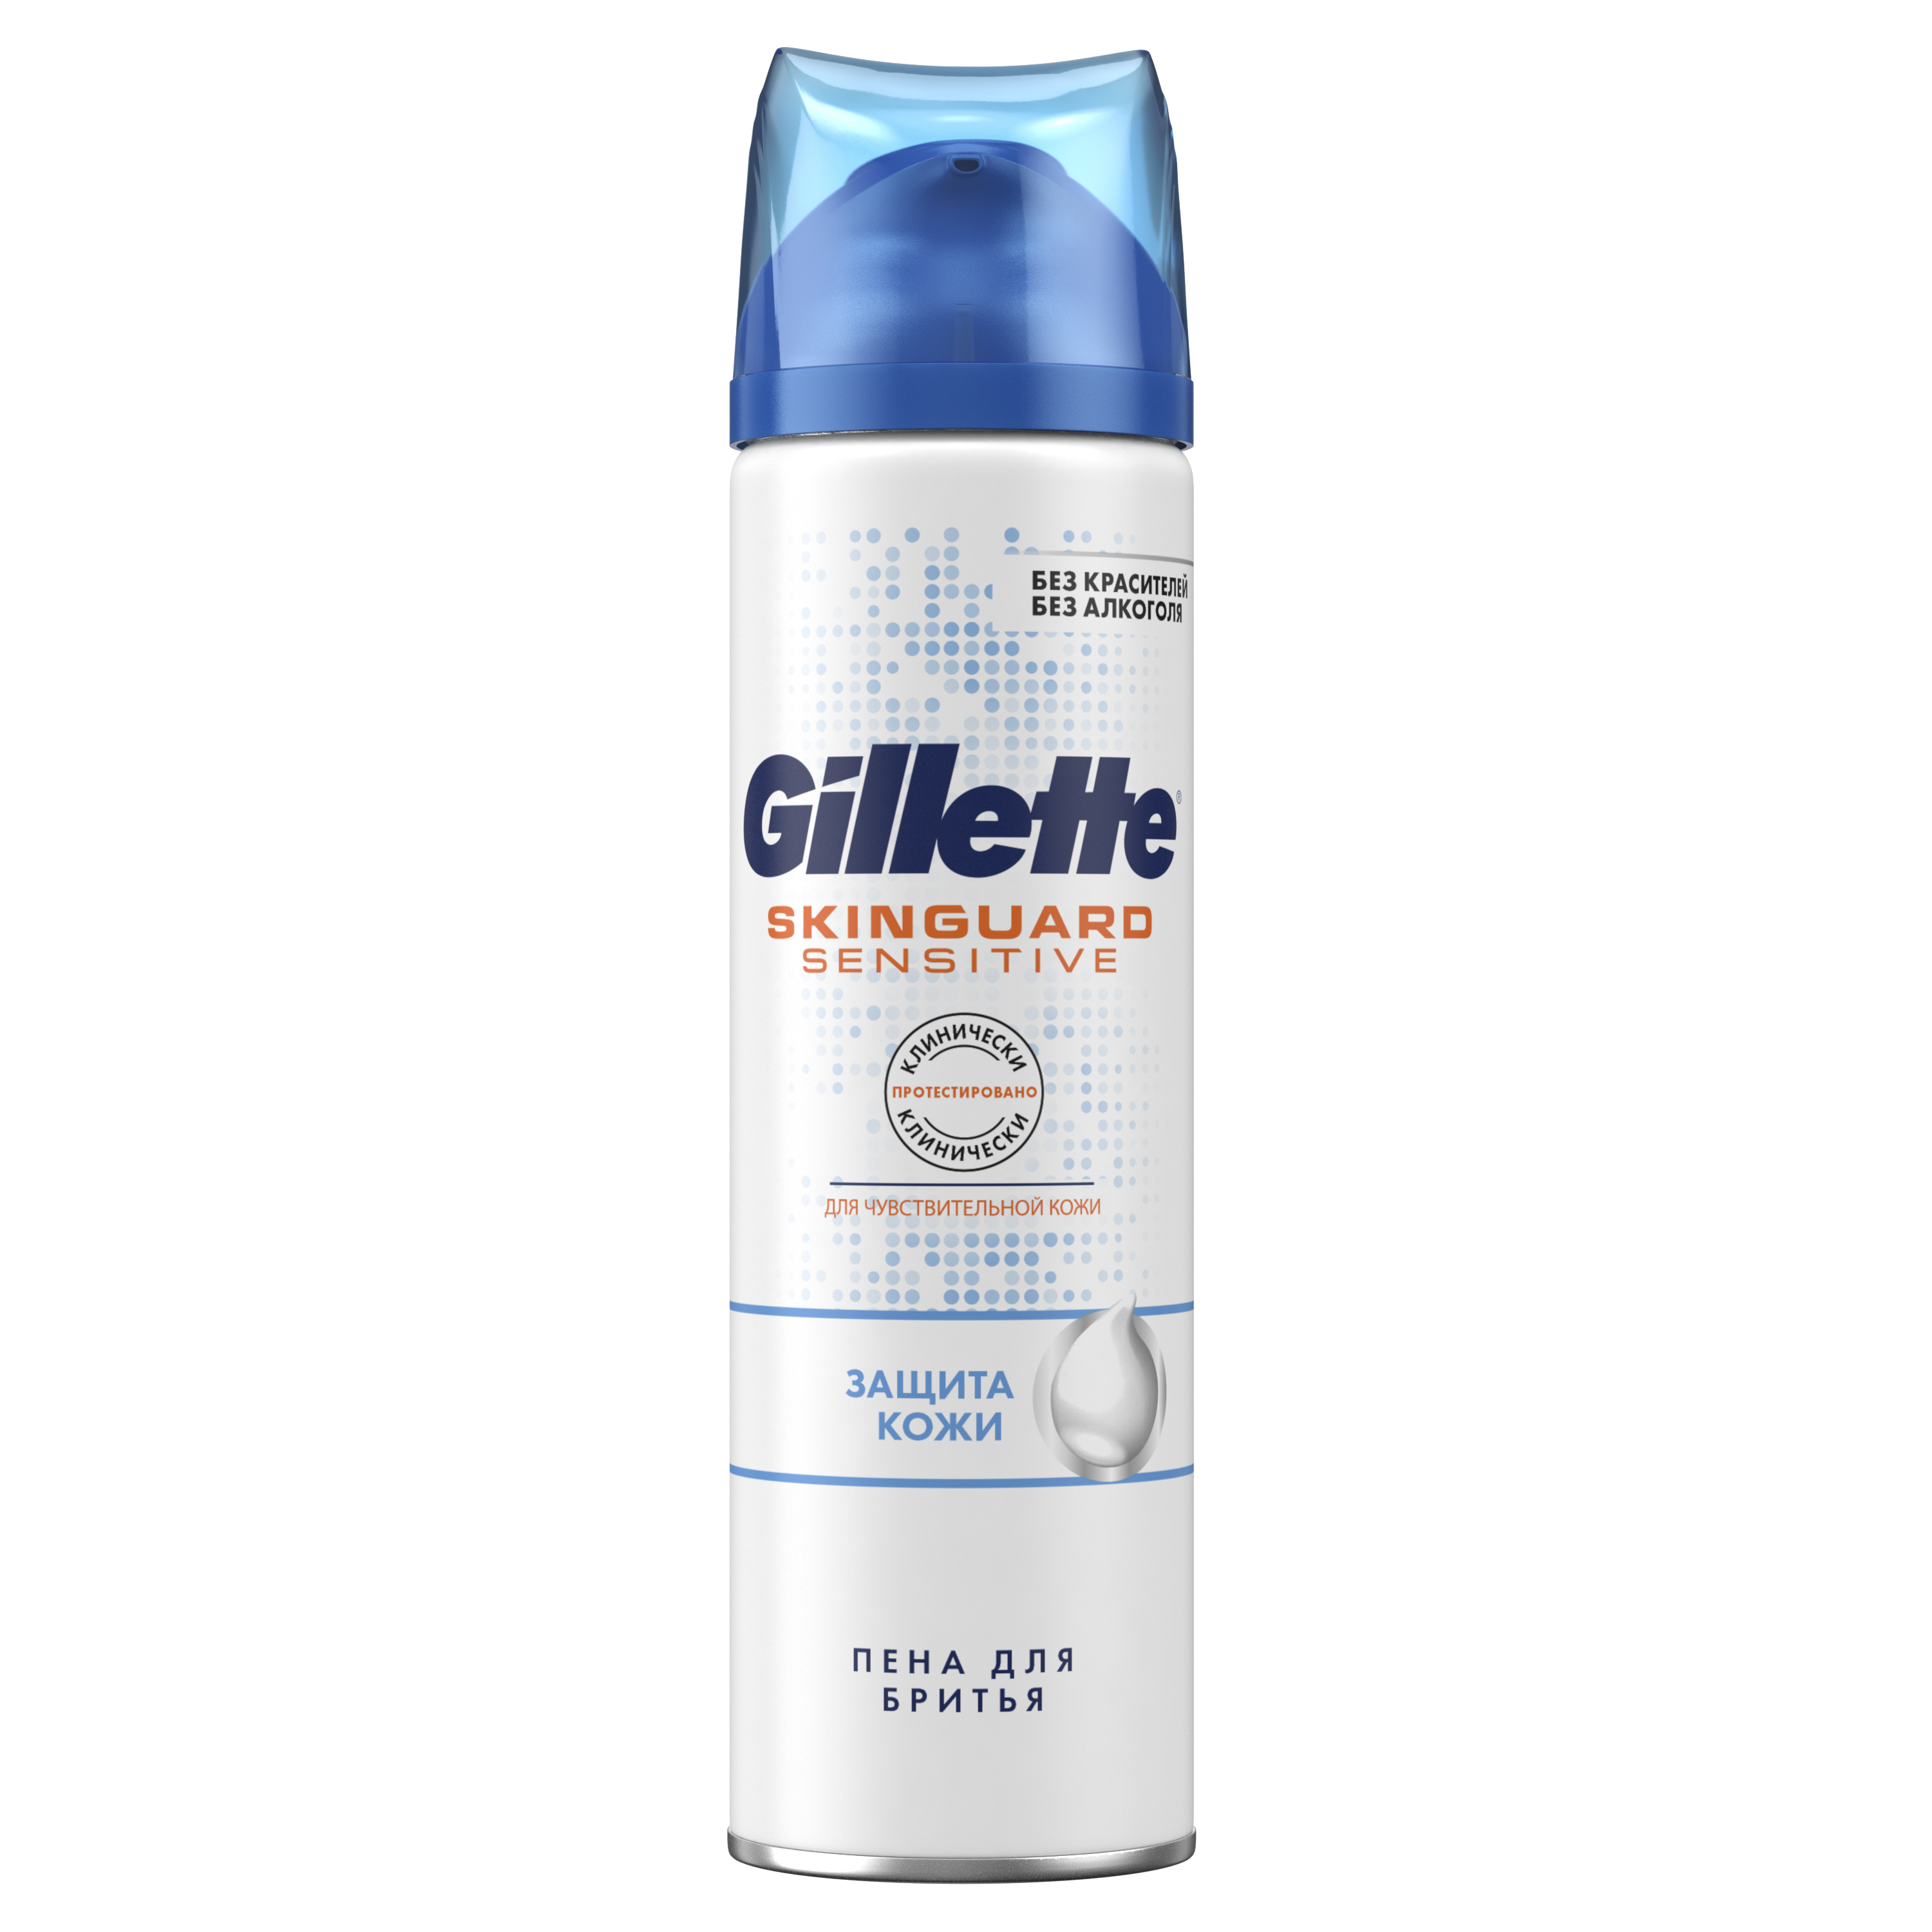 Гель для бритья Gillette Skinguard Sensitive Защита кожи, 200 мл - фото 2